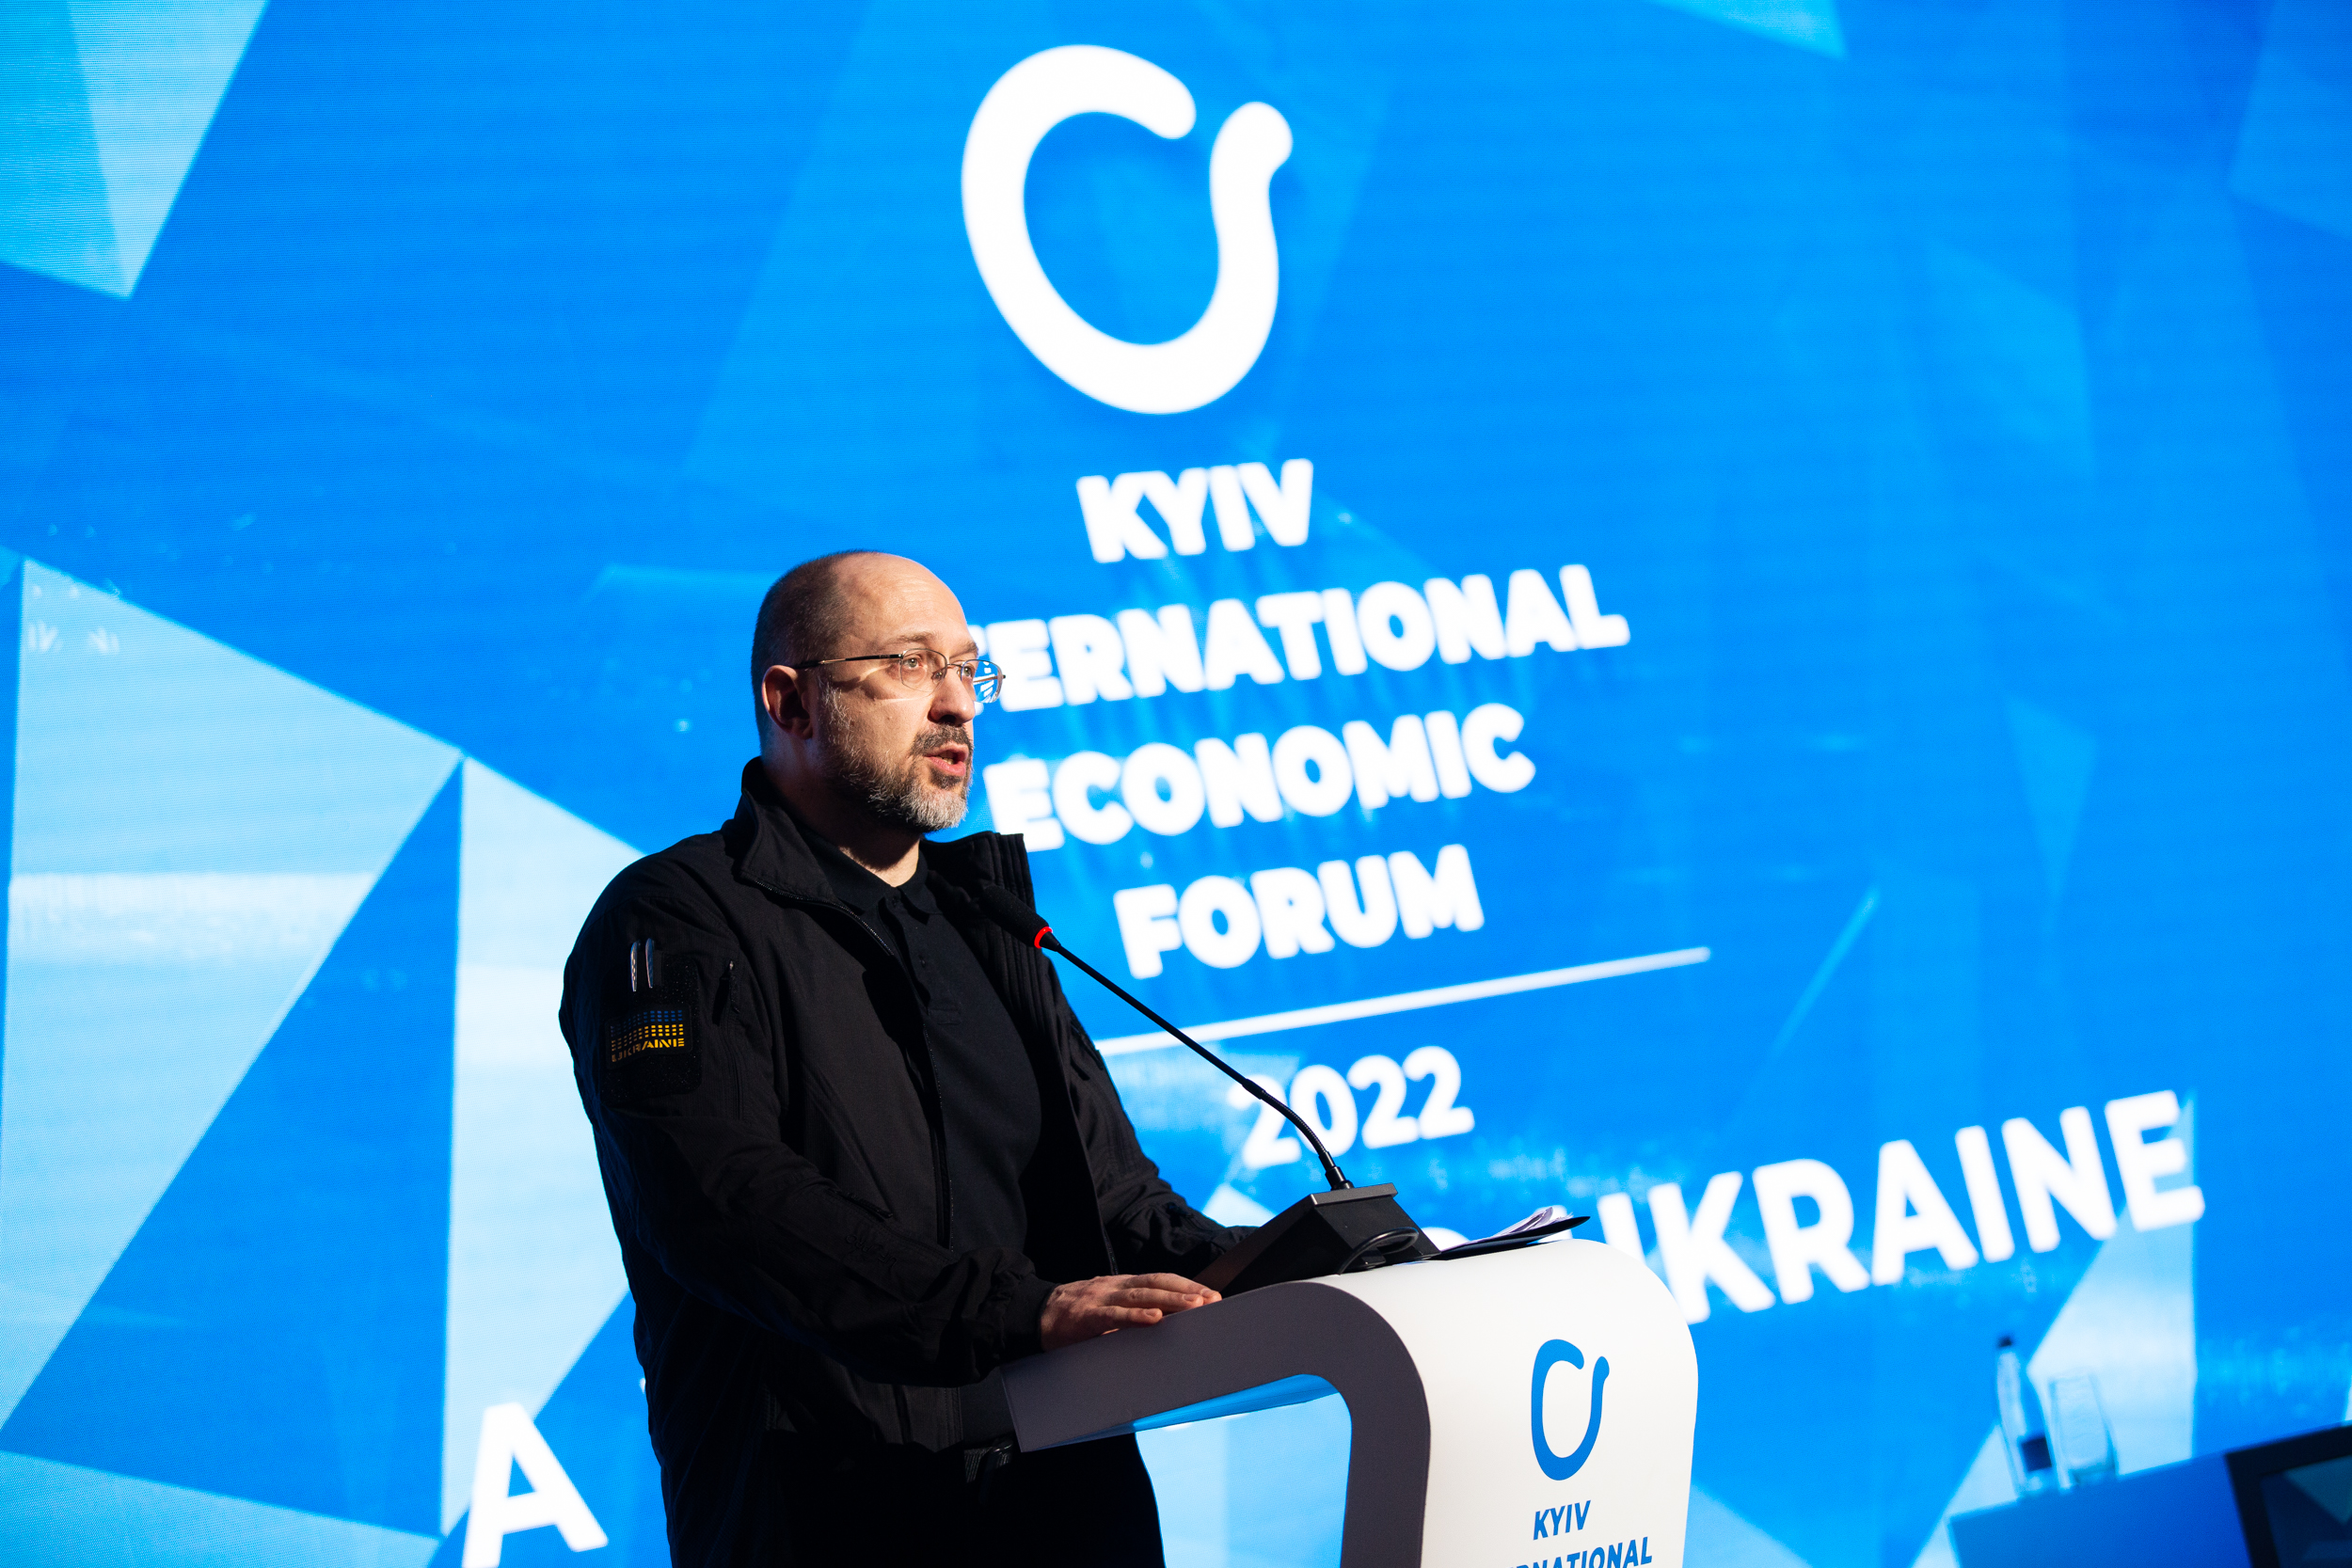  Торжественное открытие. Диалог с Премьер-министром Украины КМЭФ 2022